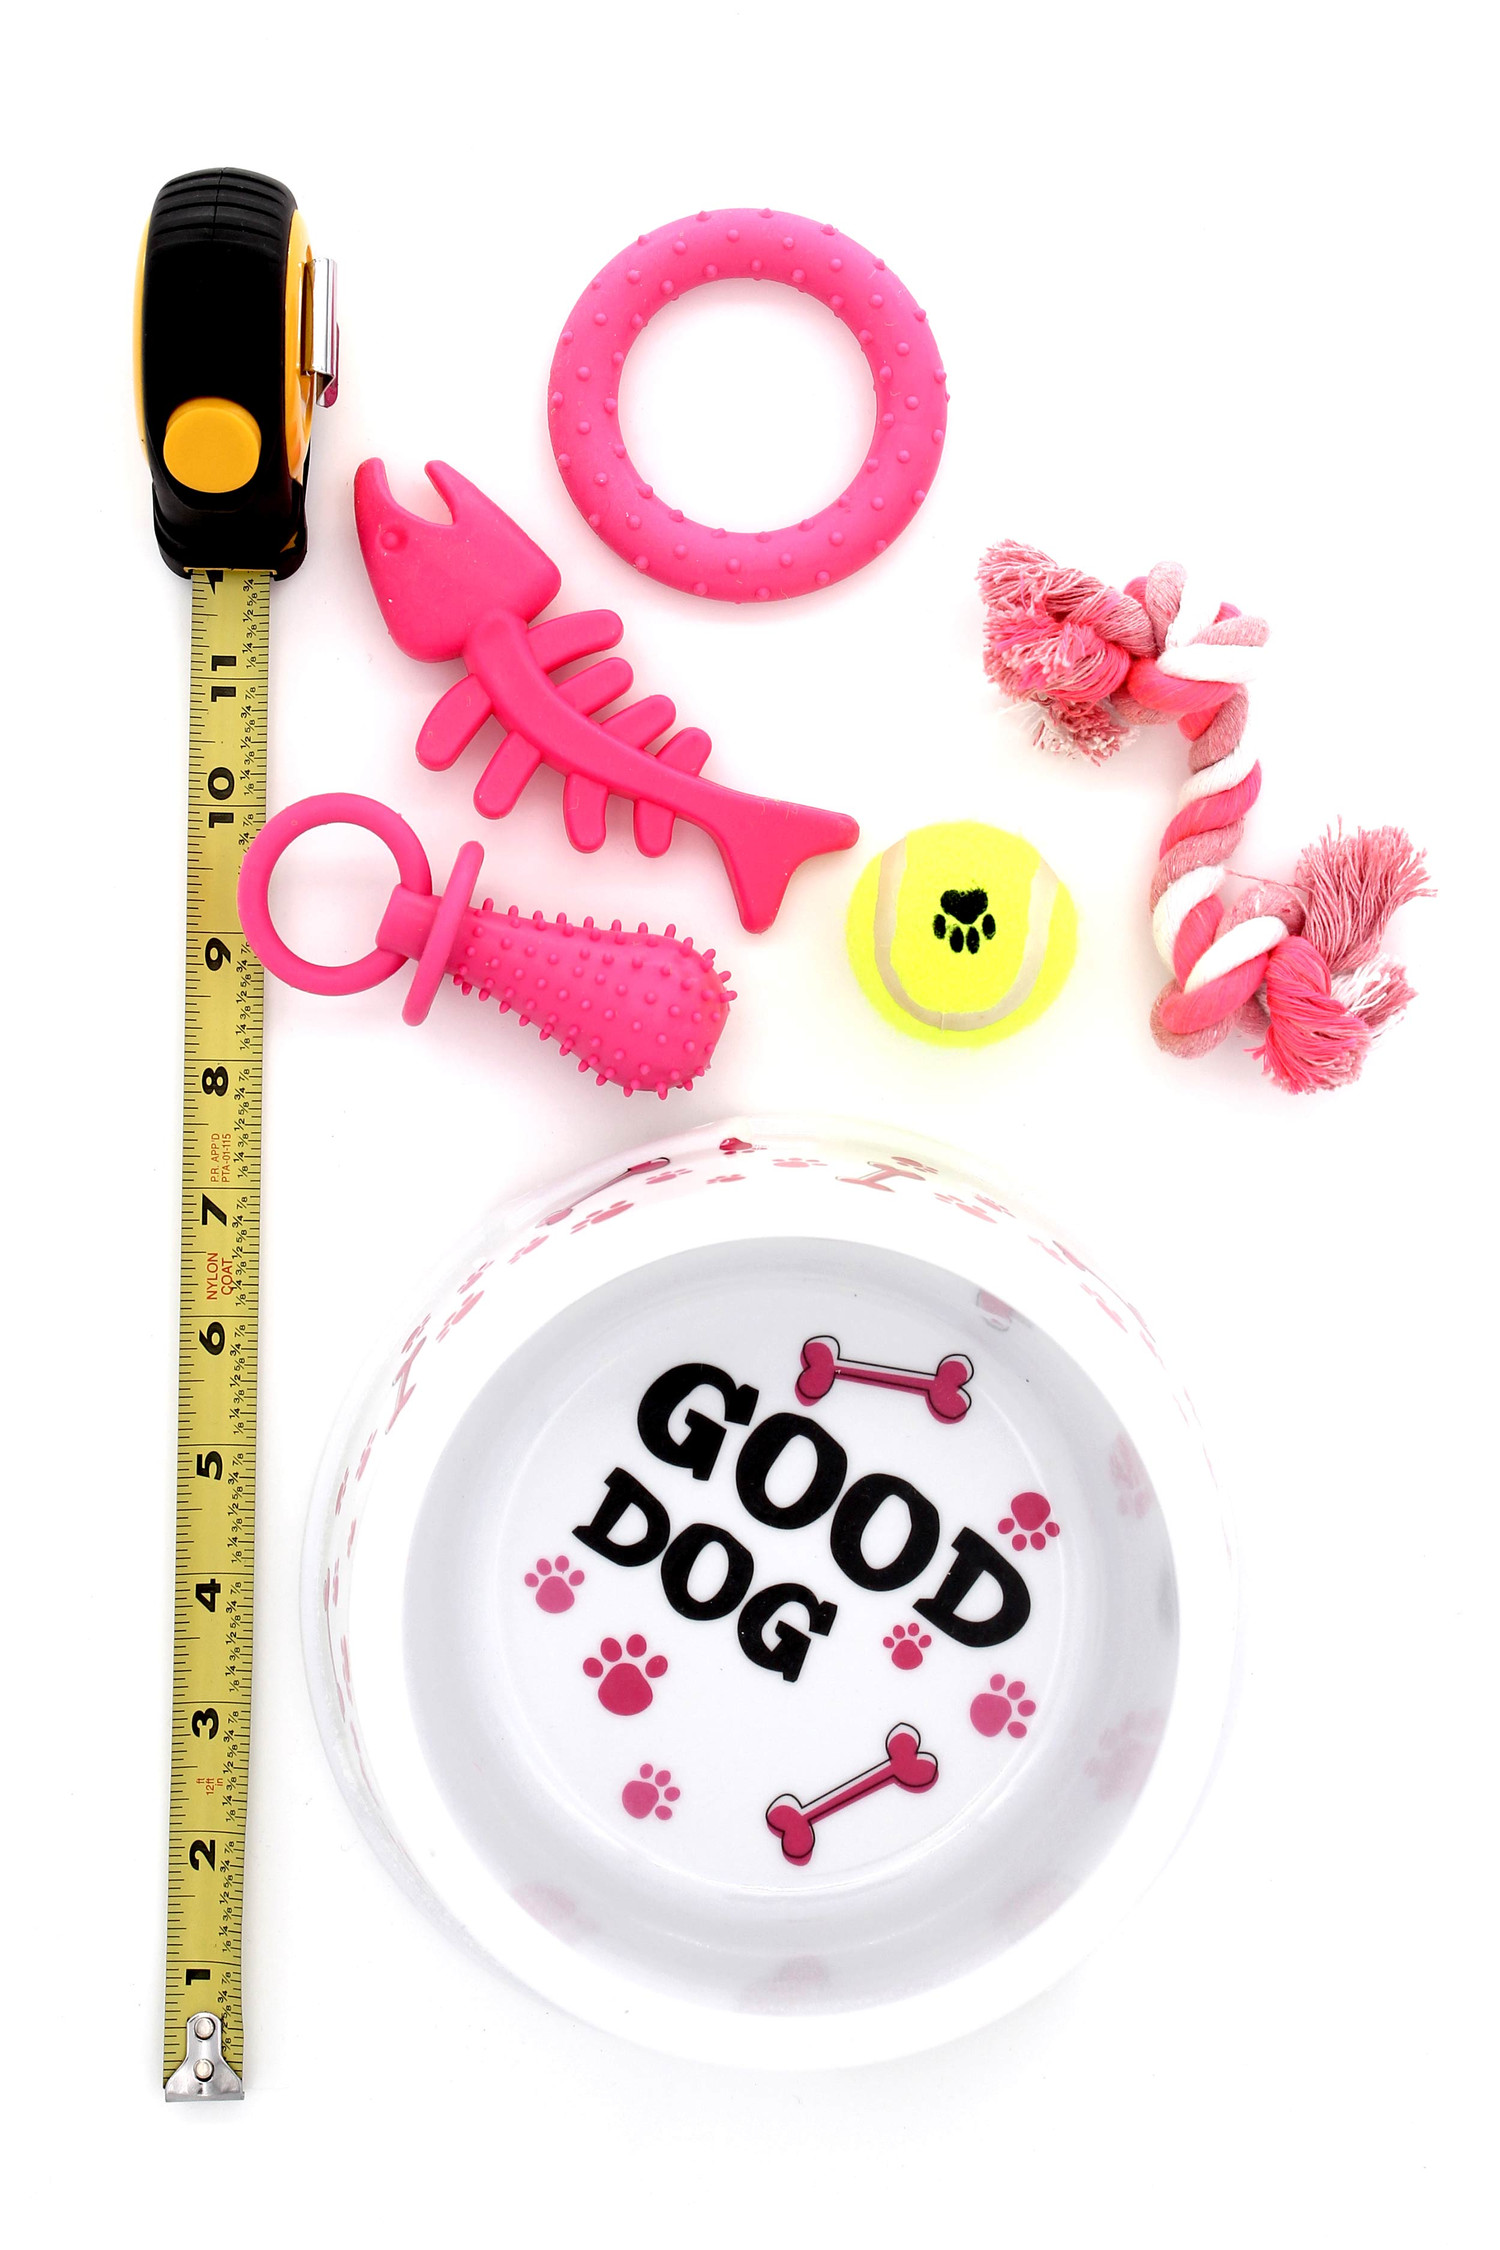 Good Dog Food Bowl and Toys Set